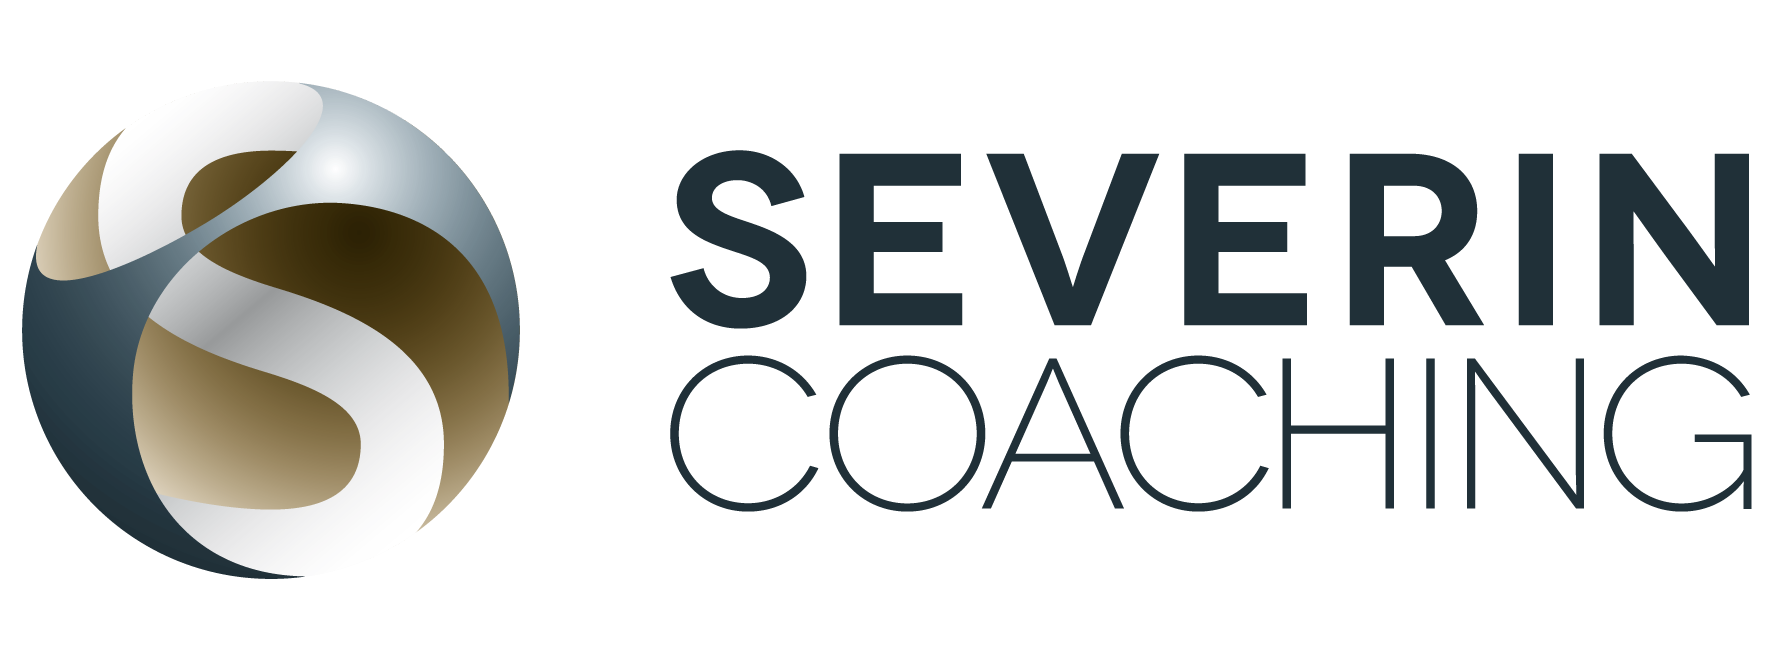 Severin Coaching Logo